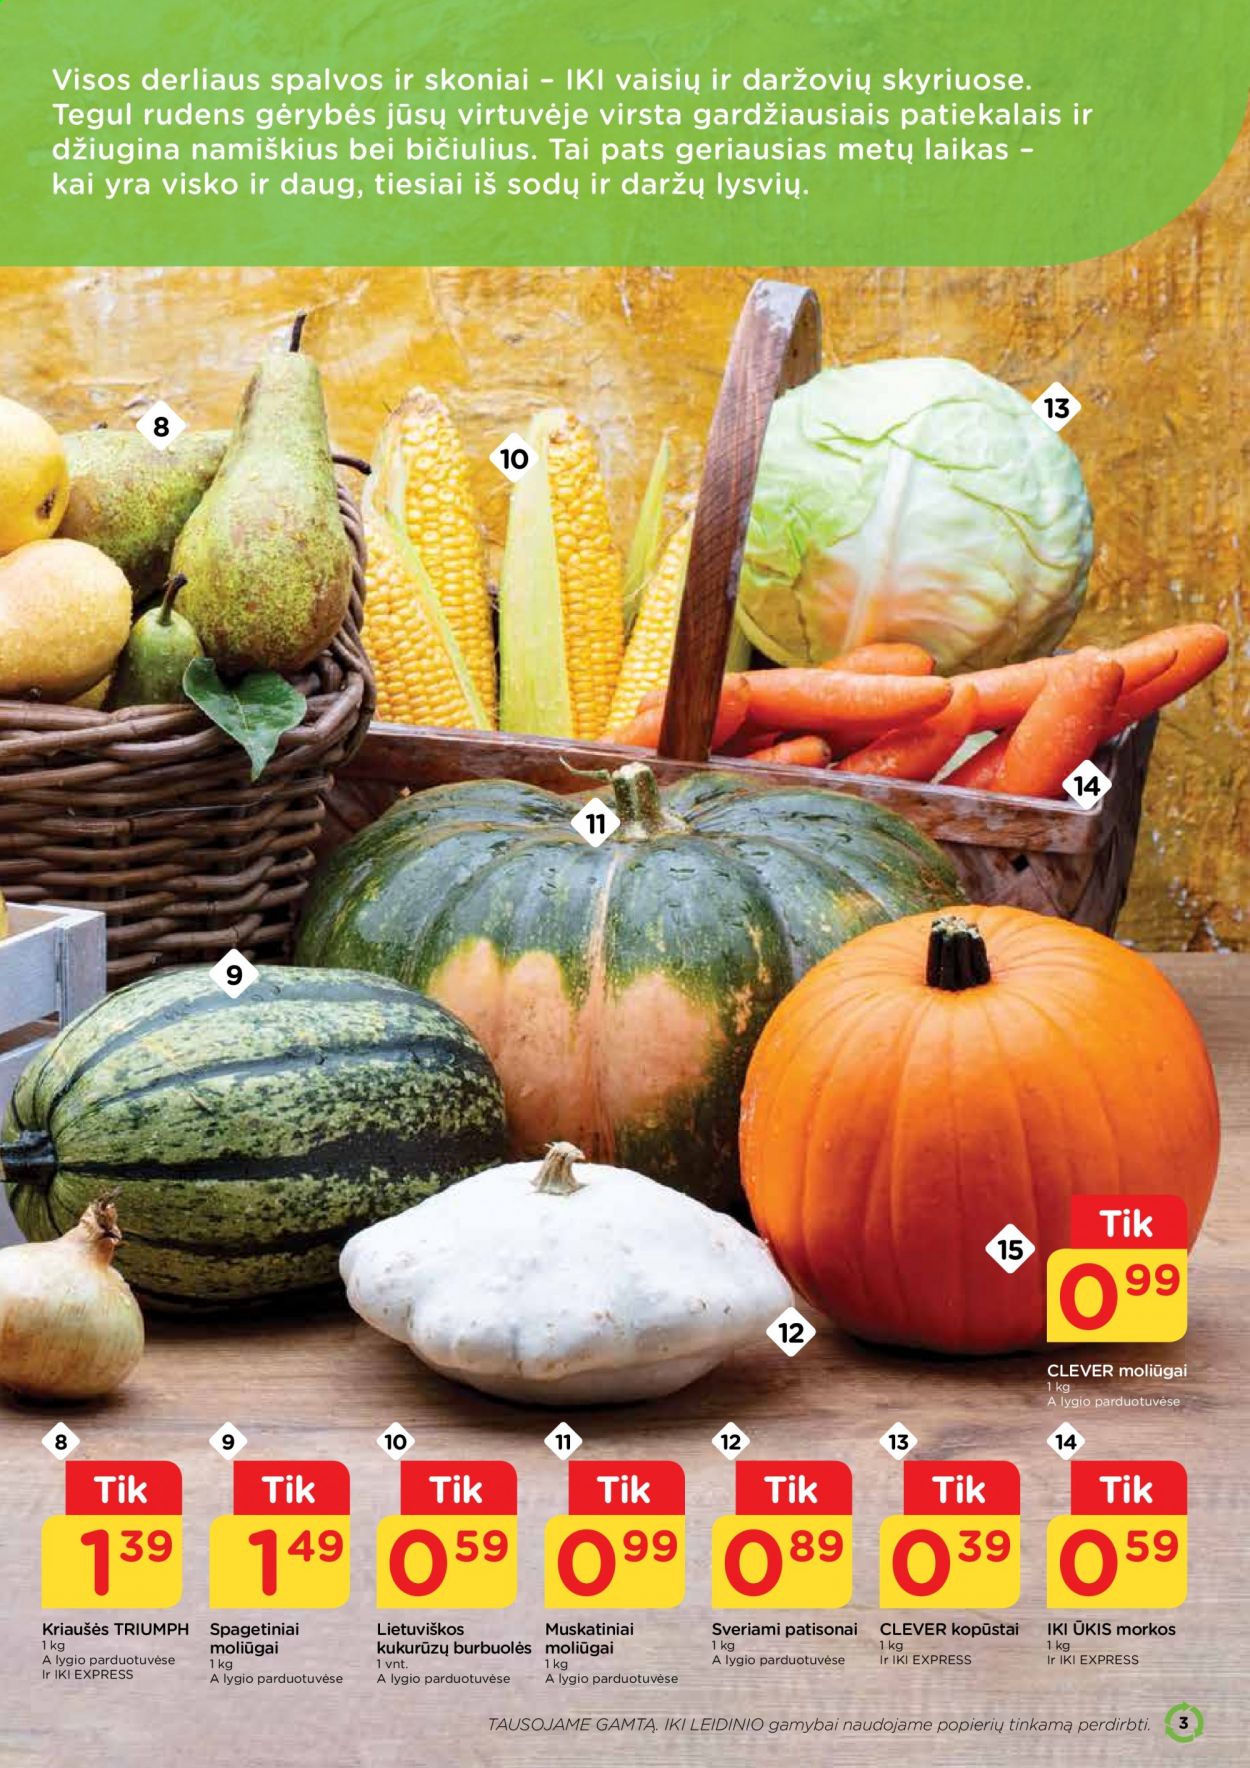 thumbnail - „iki“ leidinys - 2021 08 30 - 2021 09 05 - Išpardavimų produktai - kopūstai, moliūgas, morkos, kriaušės, kukurūzų burbuolės. 3 puslapis.